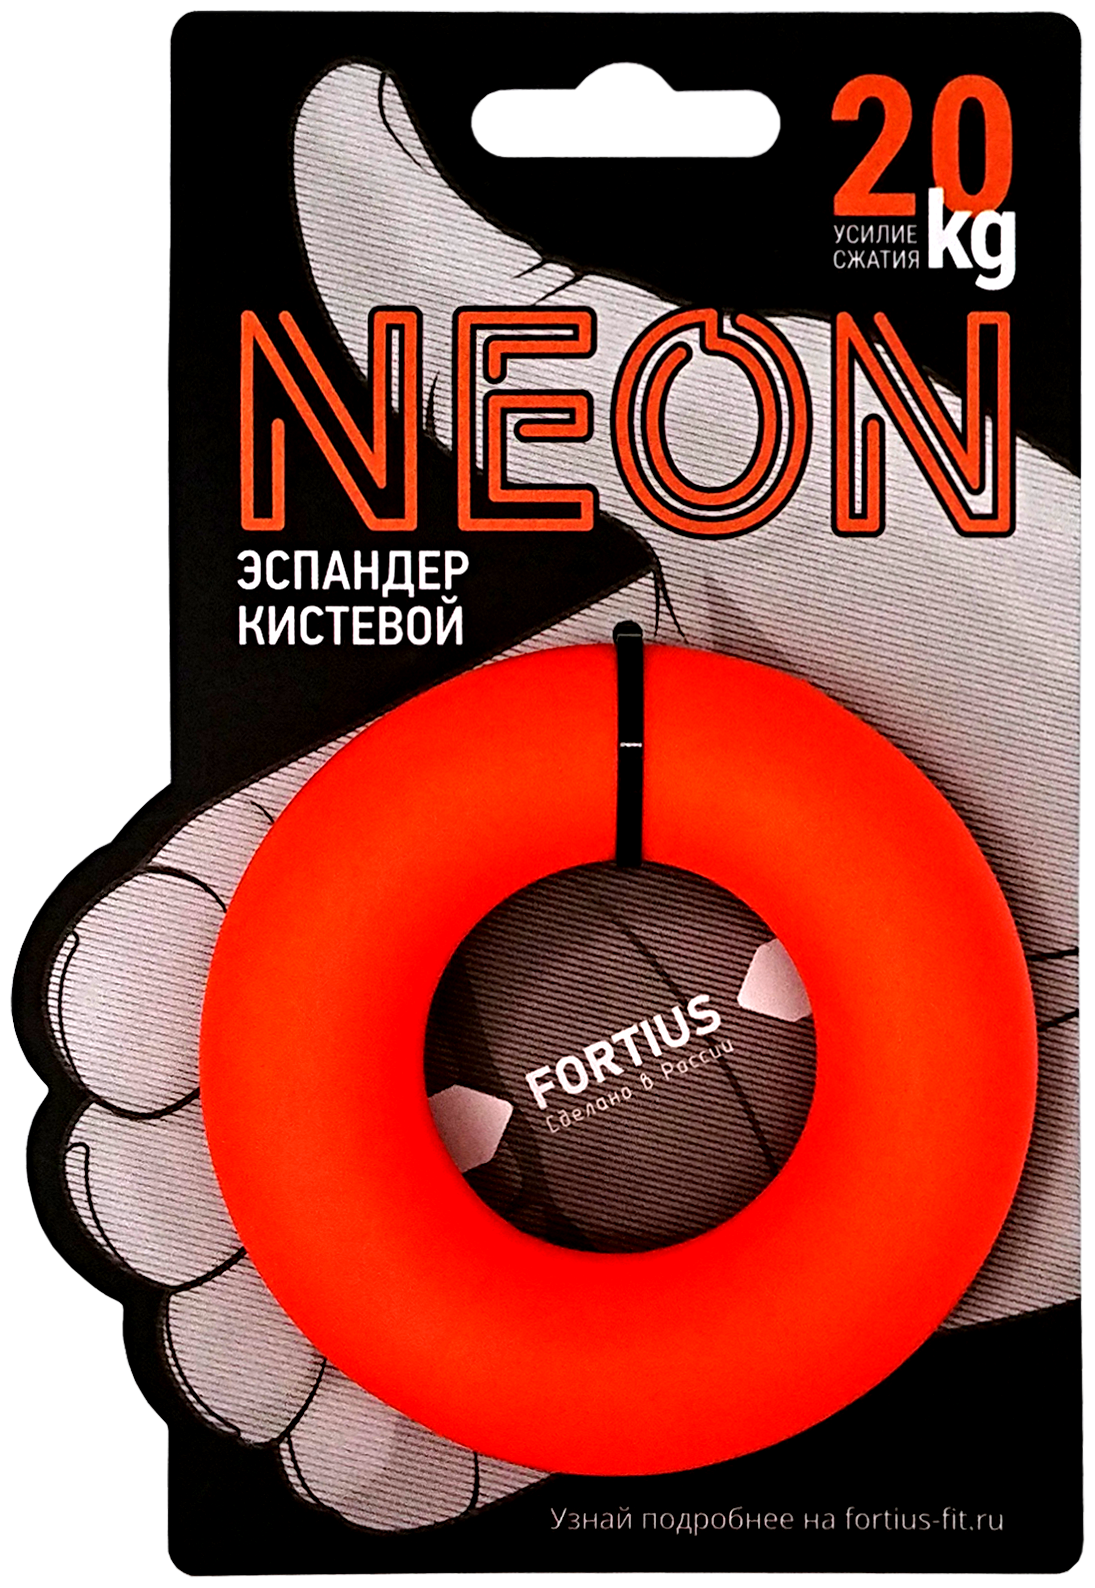 Эспандер кистевой "Fortius" Neon 20 кг.